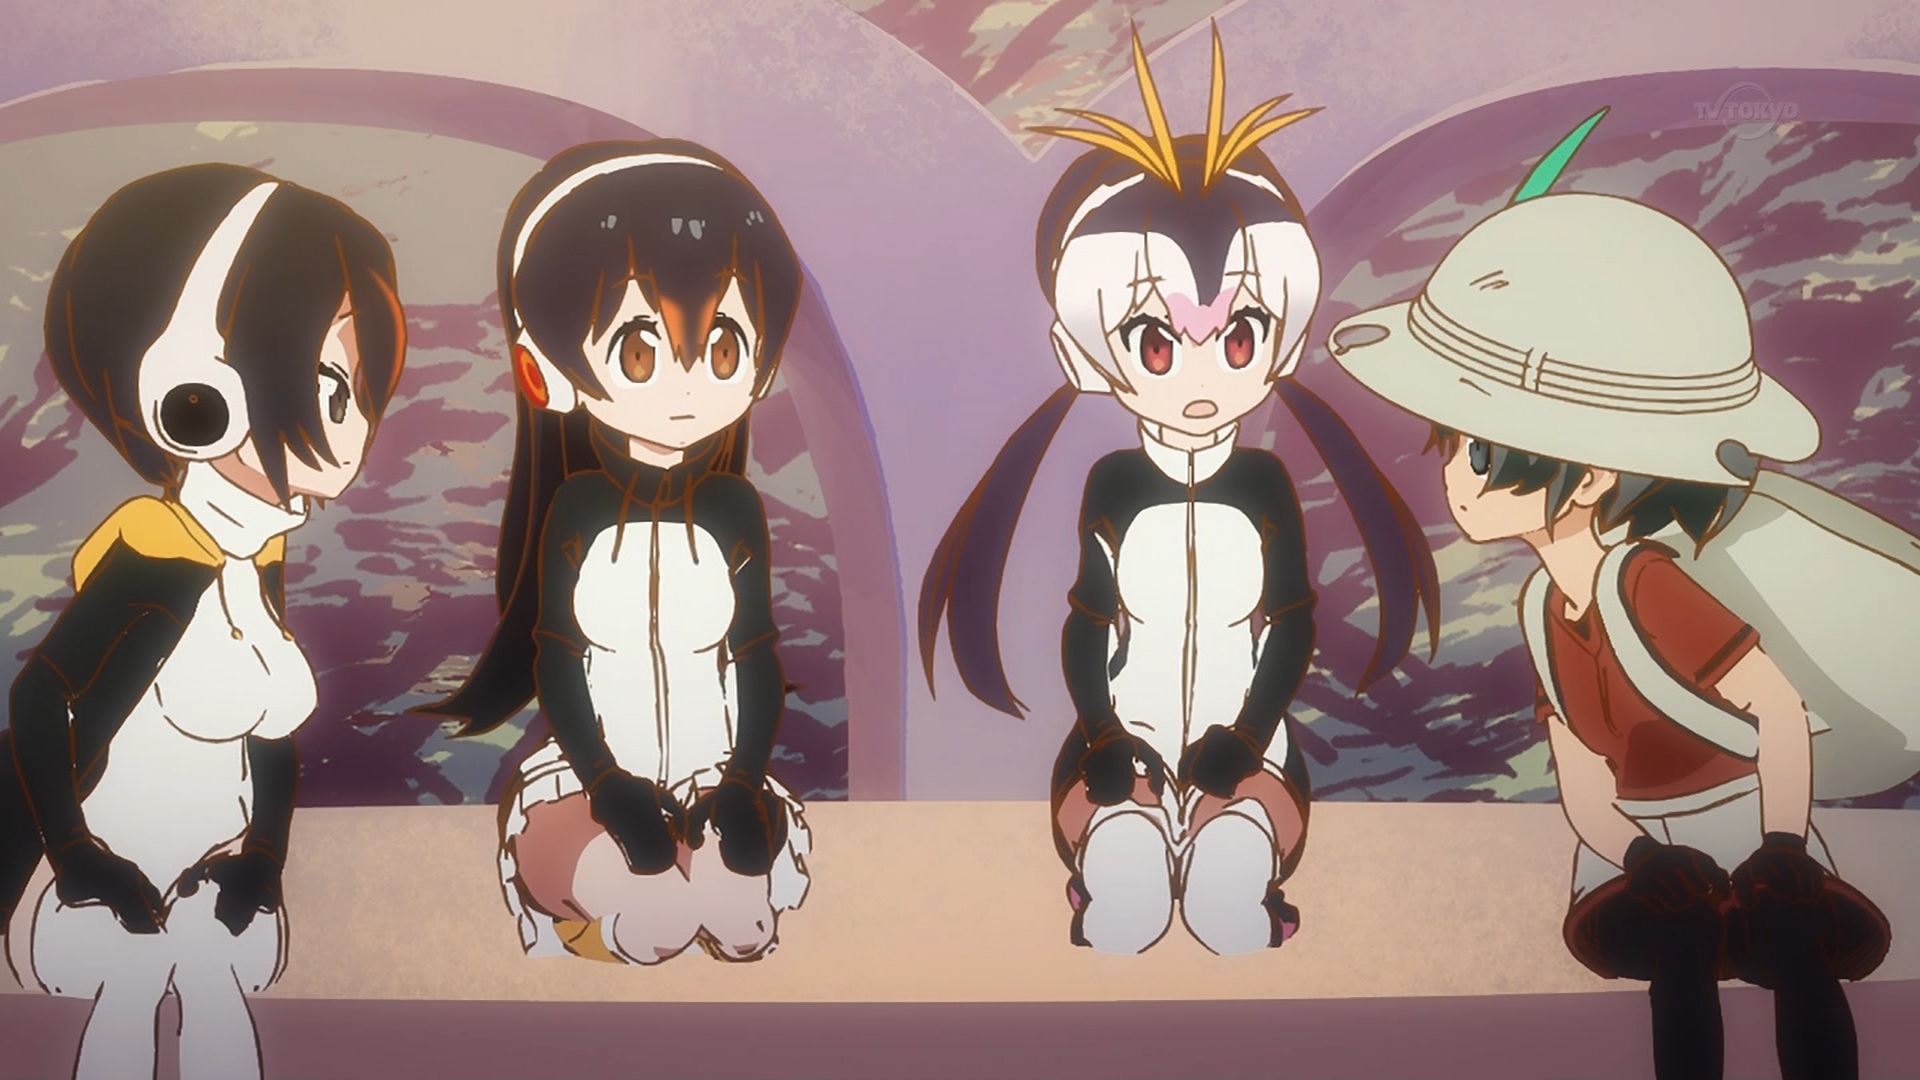 ロイヤルペンギンとジェンツーペンギンとコウテイペンギンとかばん(けものフレンズ8話画像)